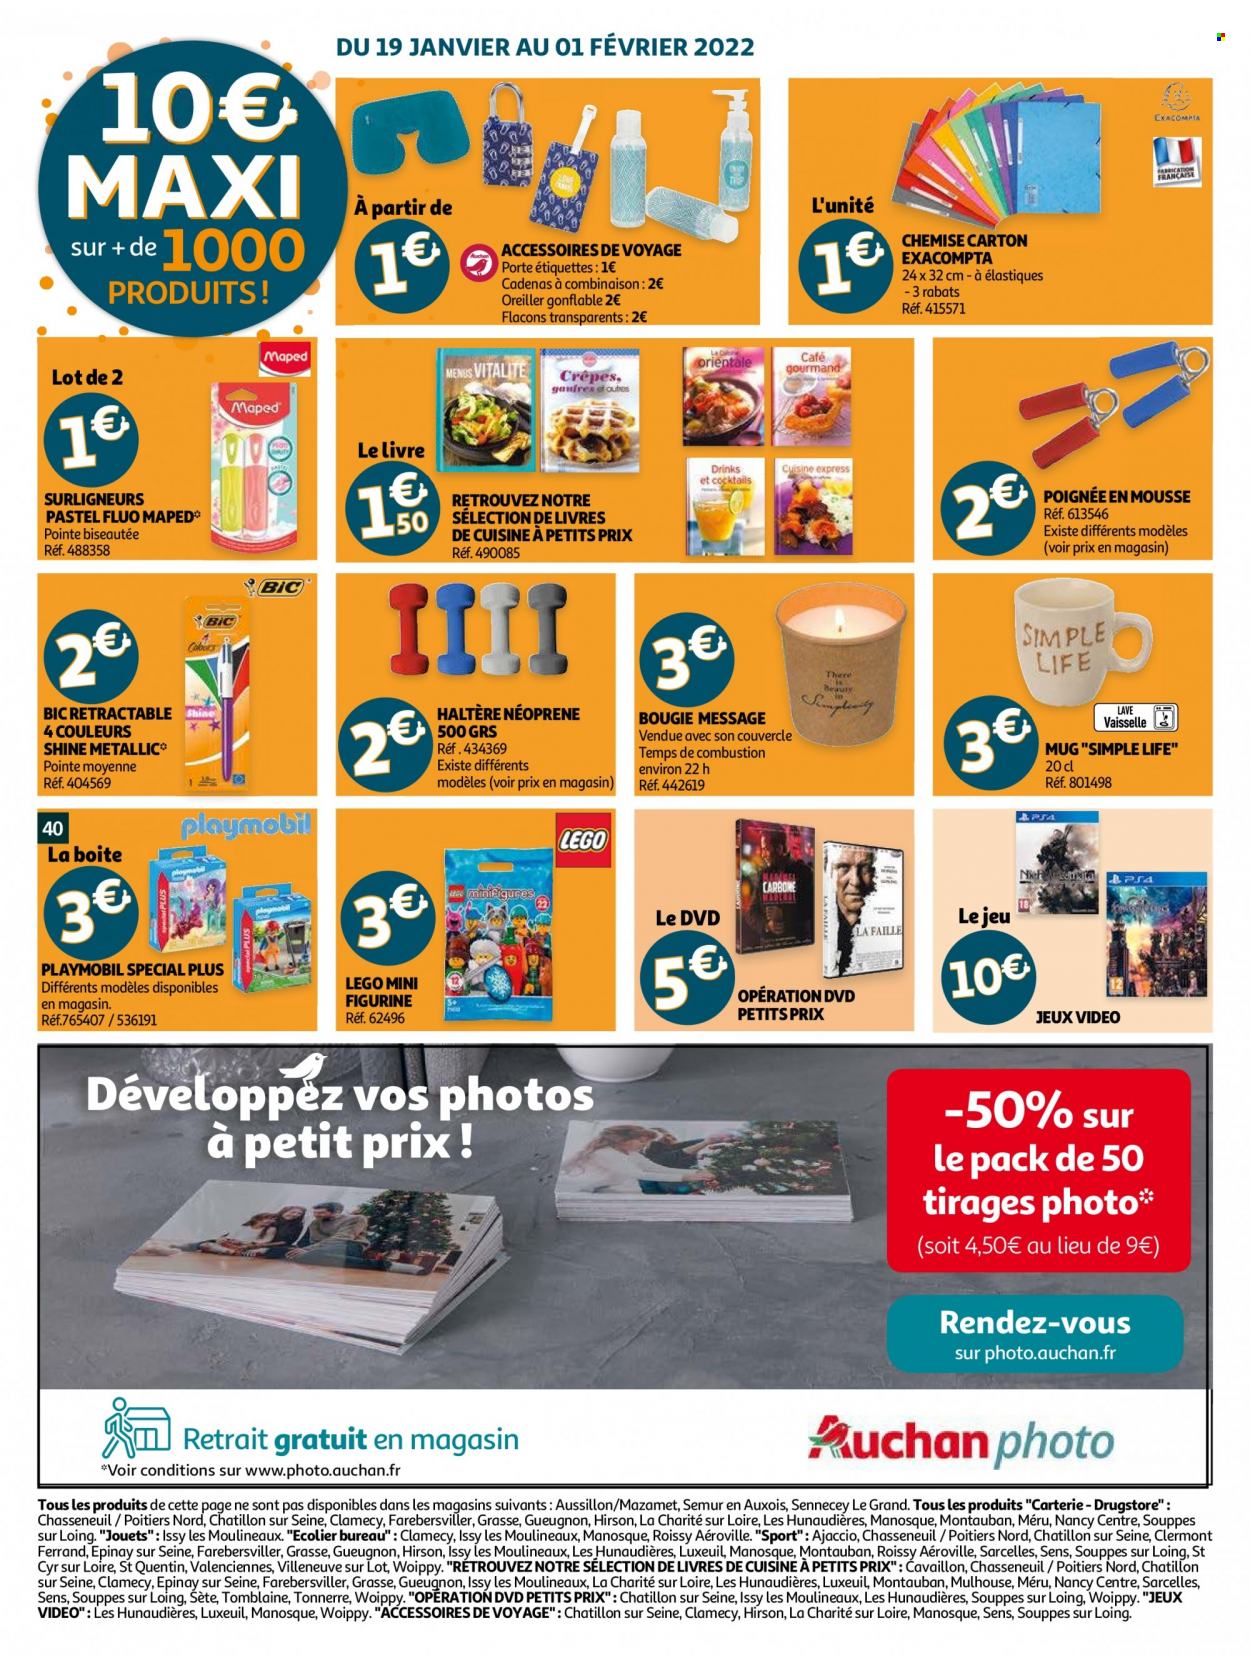 thumbnail - Catalogue Auchan - 19/01/2022 - 25/01/2022 - Produits soldés - crêpes, figurine, café, BIC, mug, surligneur, bougie, livre, DVD, oreiller, chemise, haltère, Playmobil, Lego. Page 40.